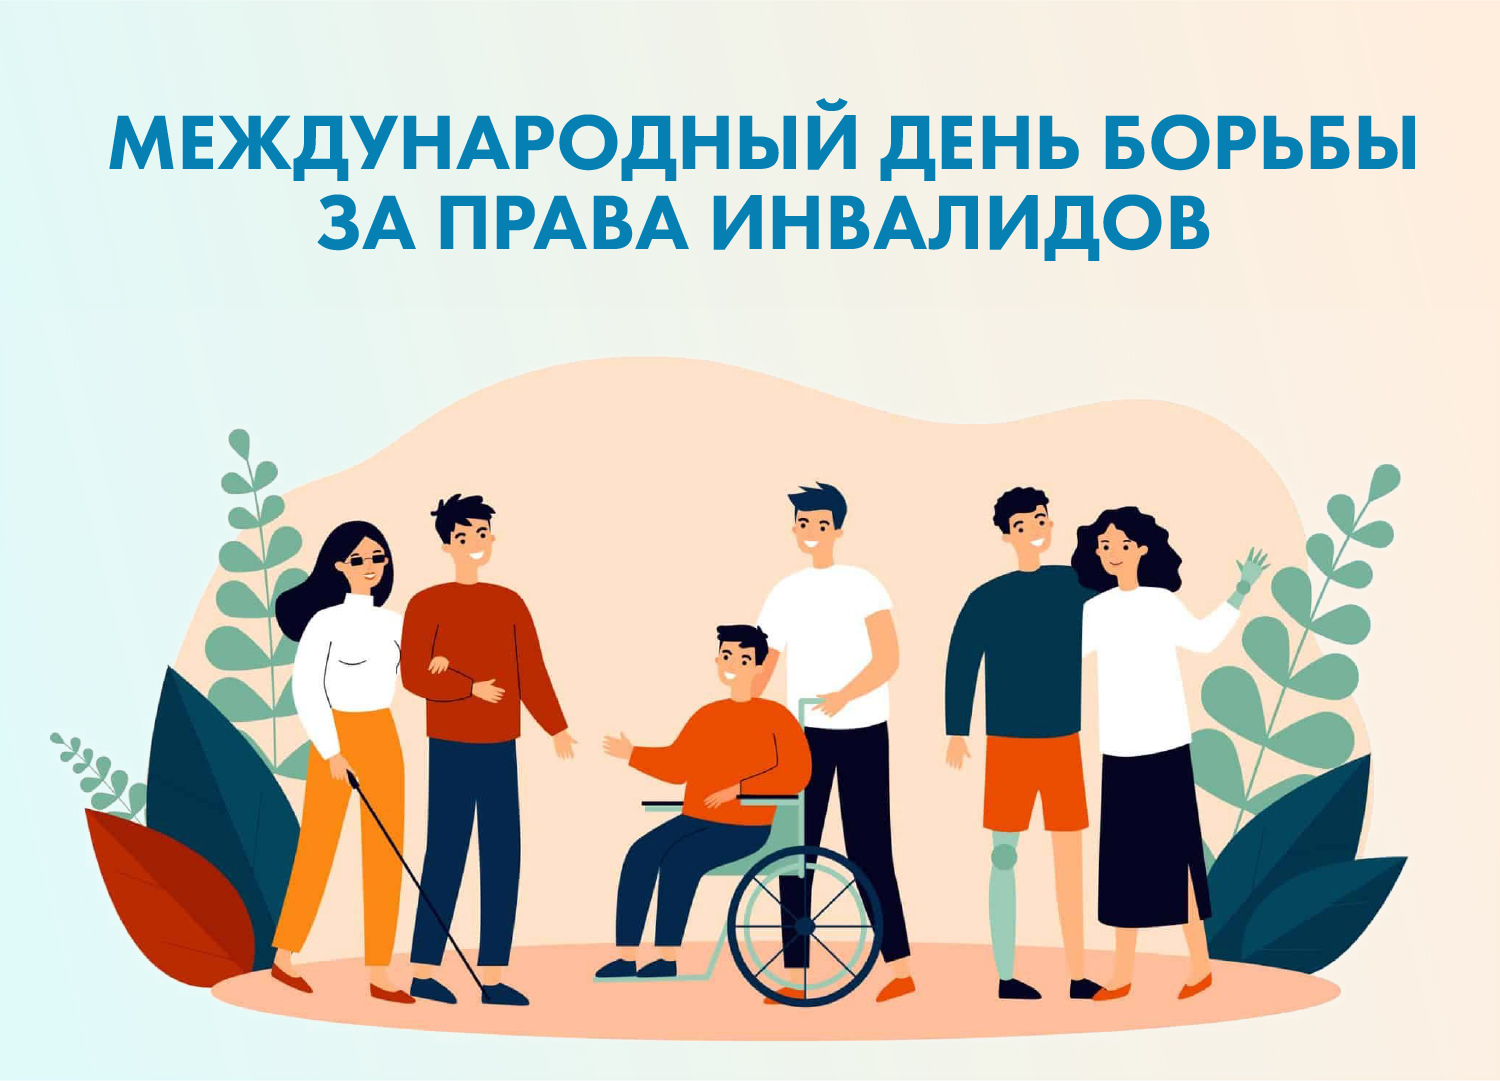 5 мая - Международный день борьбы за права инвалидов.